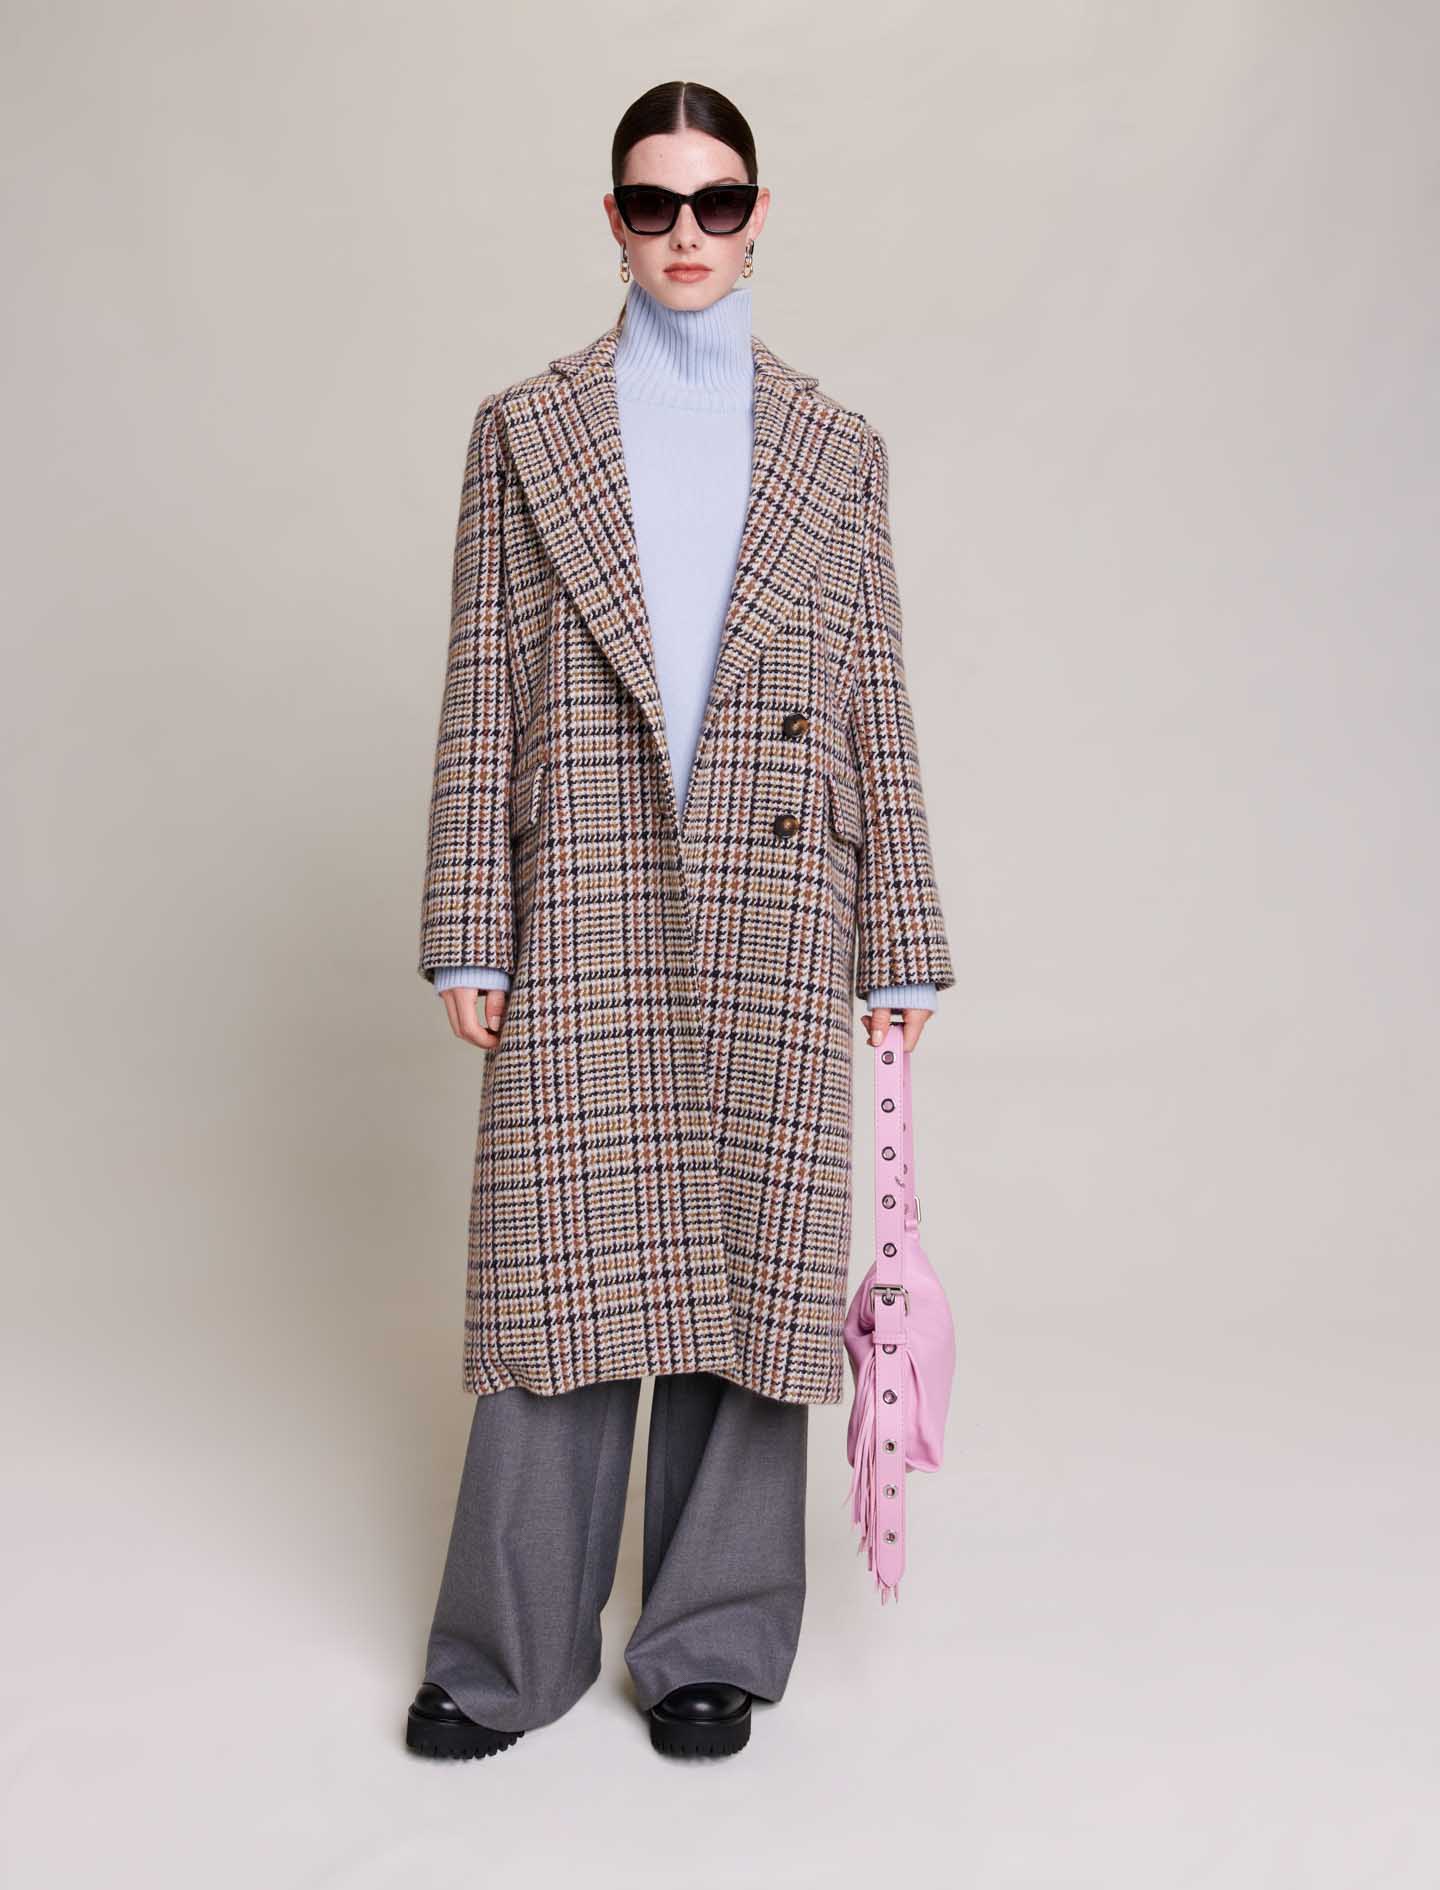 Maje Woman's wool, Long suit jacket for Fall/Winter, in color Beige / Beige